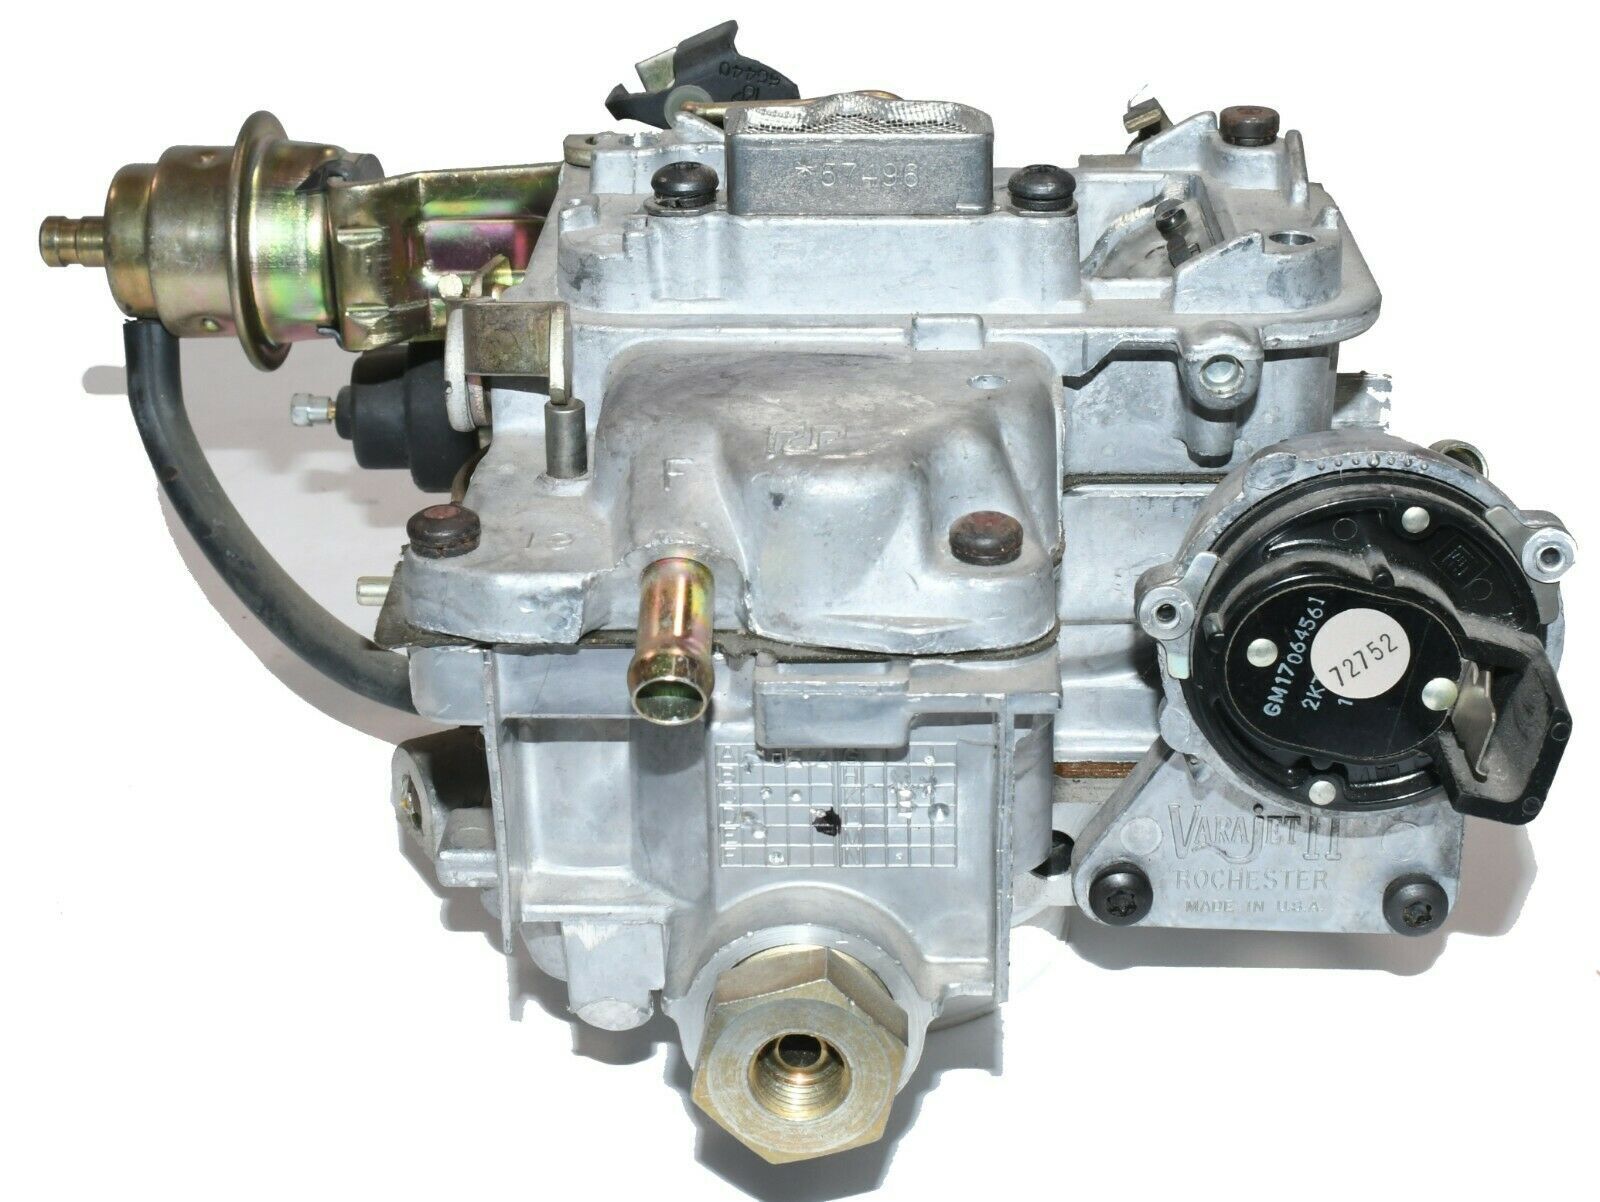 New Rochester Varajet 2SE carburetor for Jeep AMC GM w/2.5L 151cid 4cyl engine